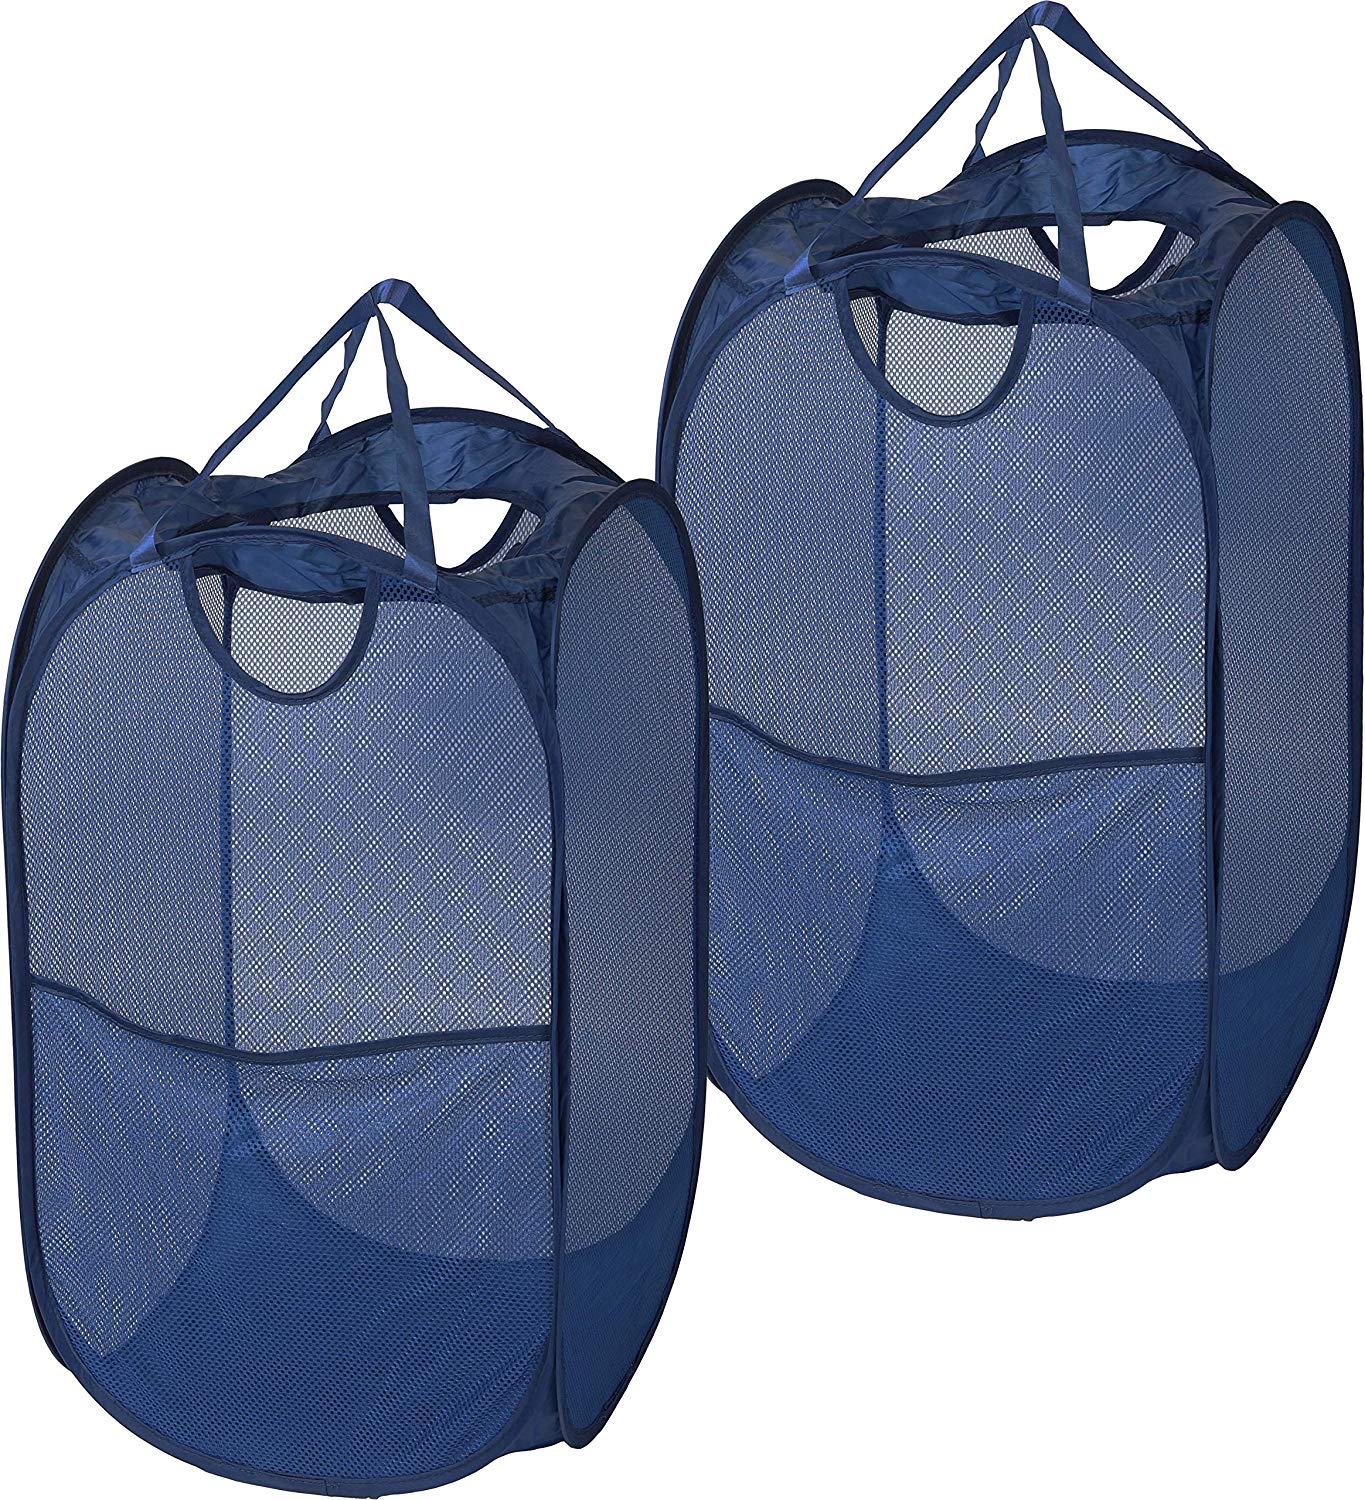 good01 Laundry Bag Pop Up Mesh Washing Foldable Basket Bag Bin Hamper Storage 